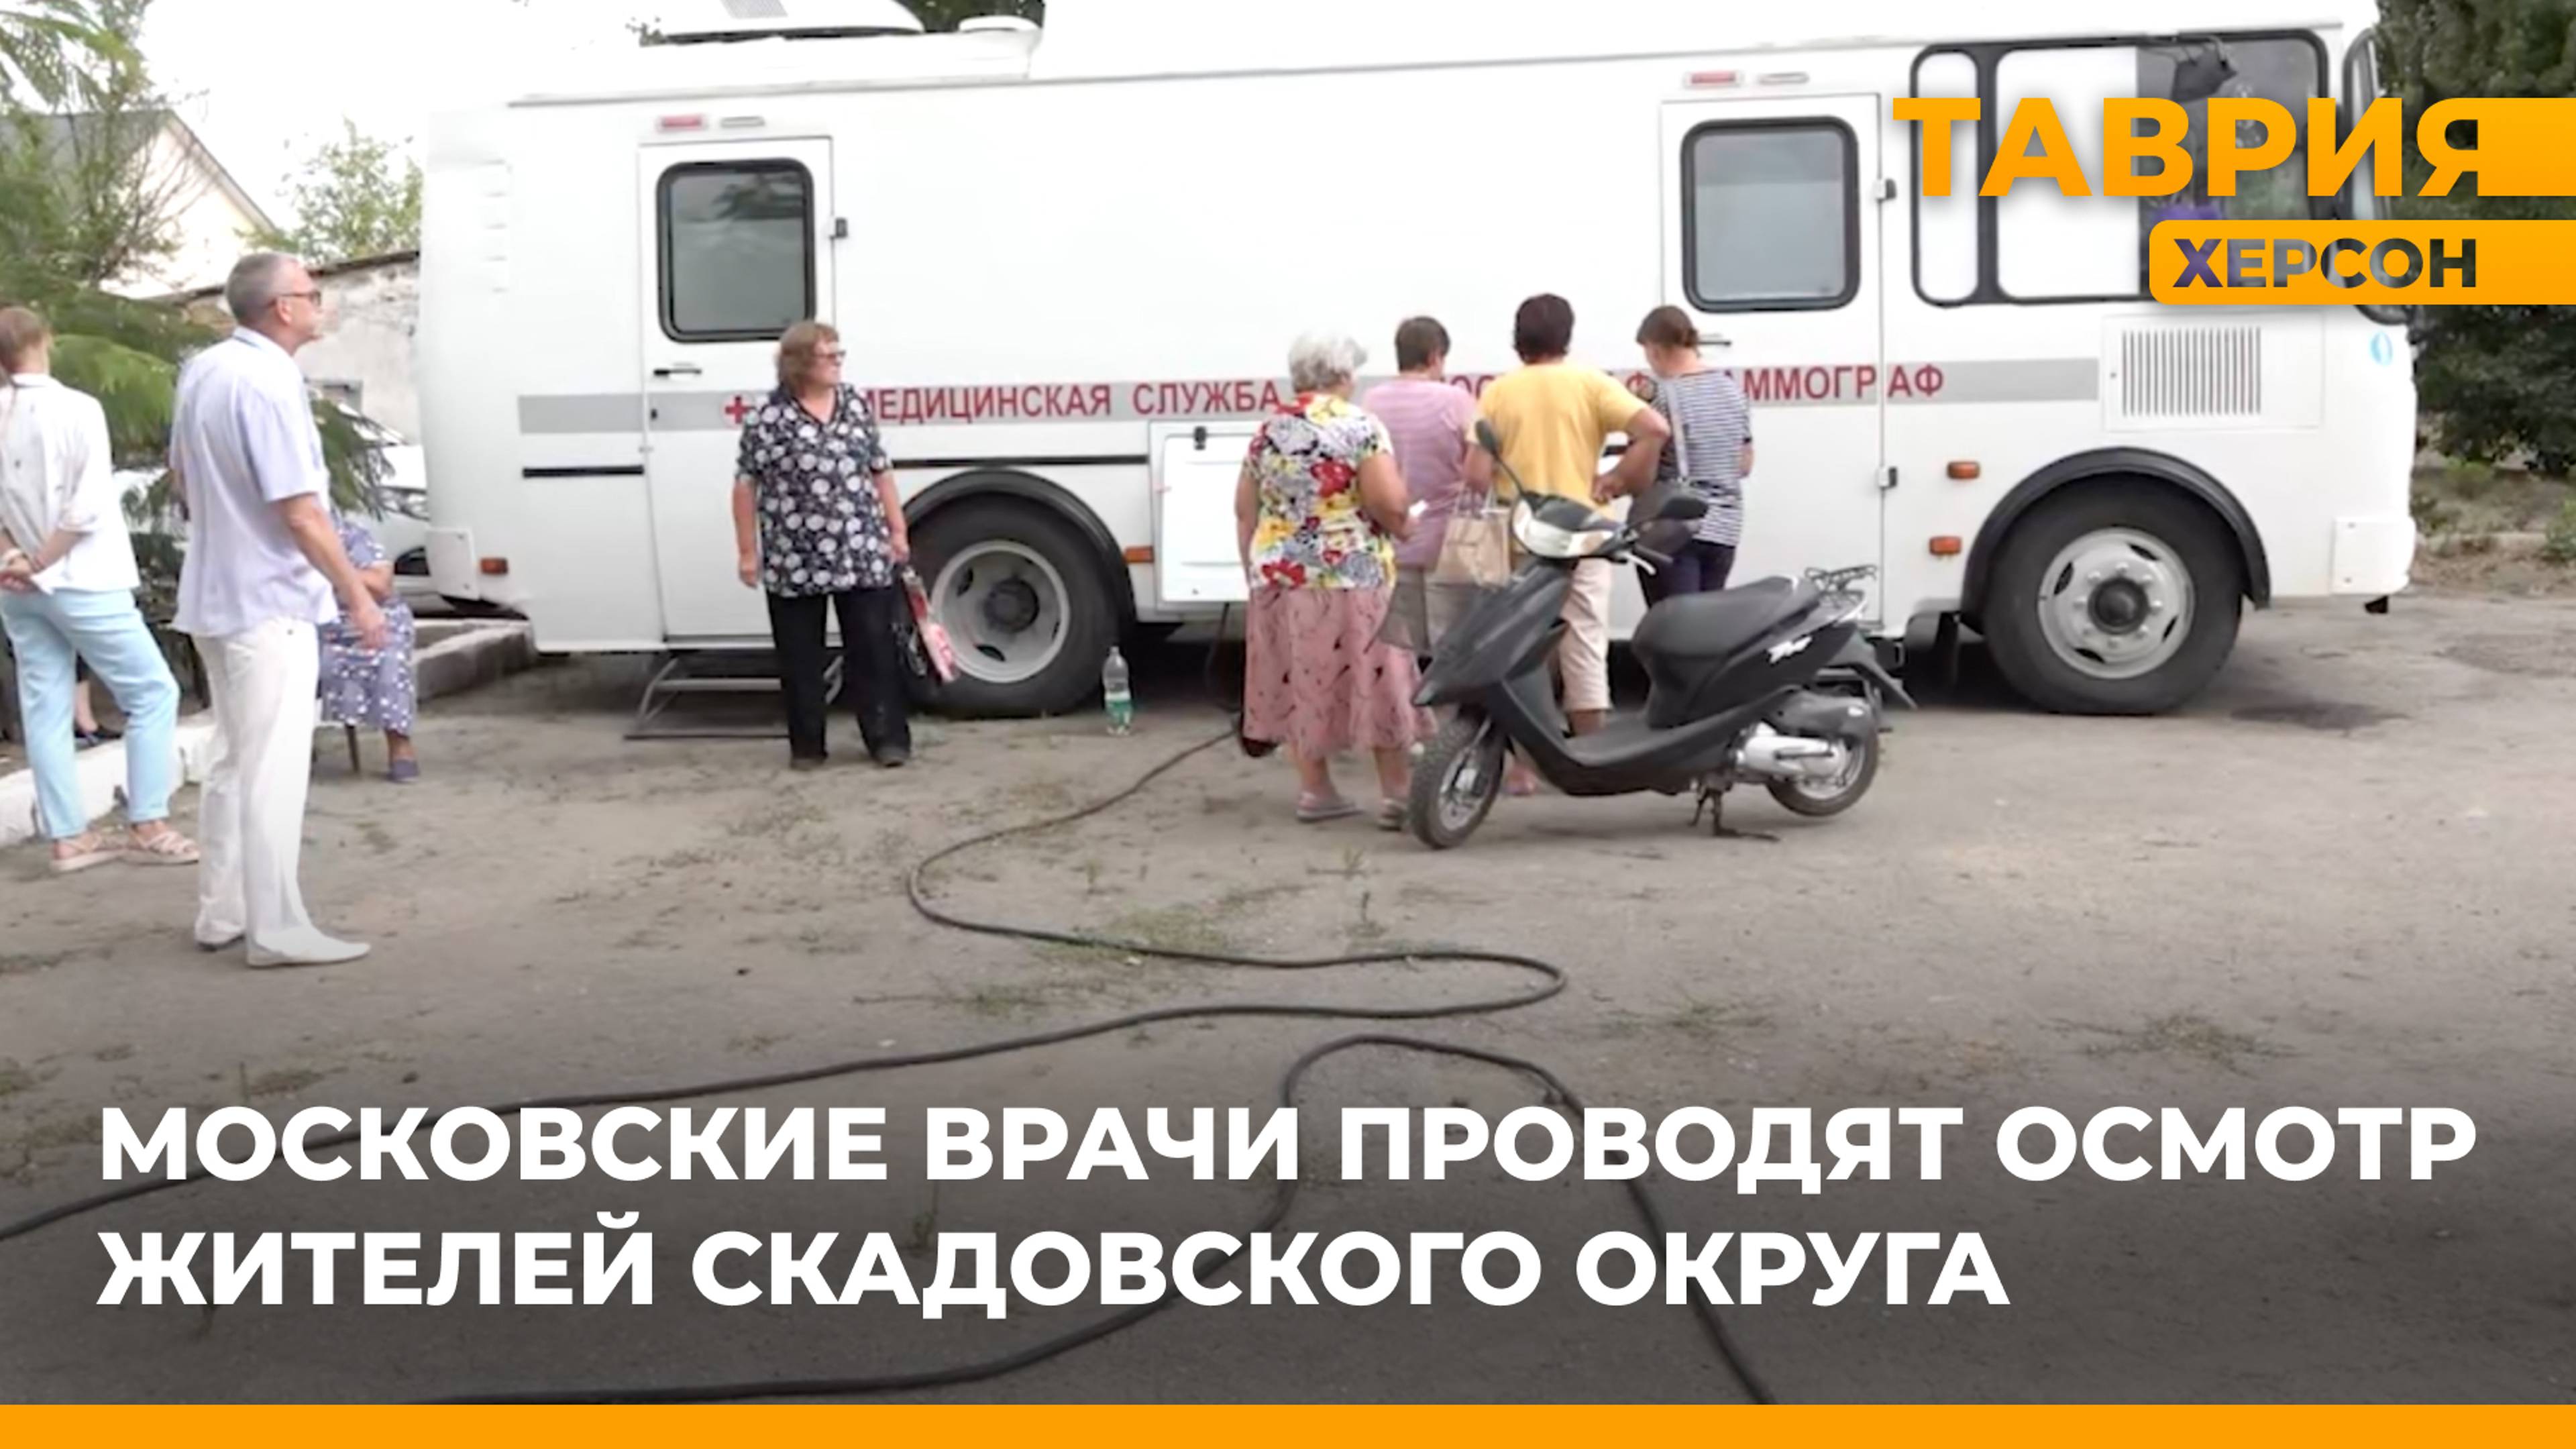 Московские врачи проводят осмотр жителей Скадовского округа